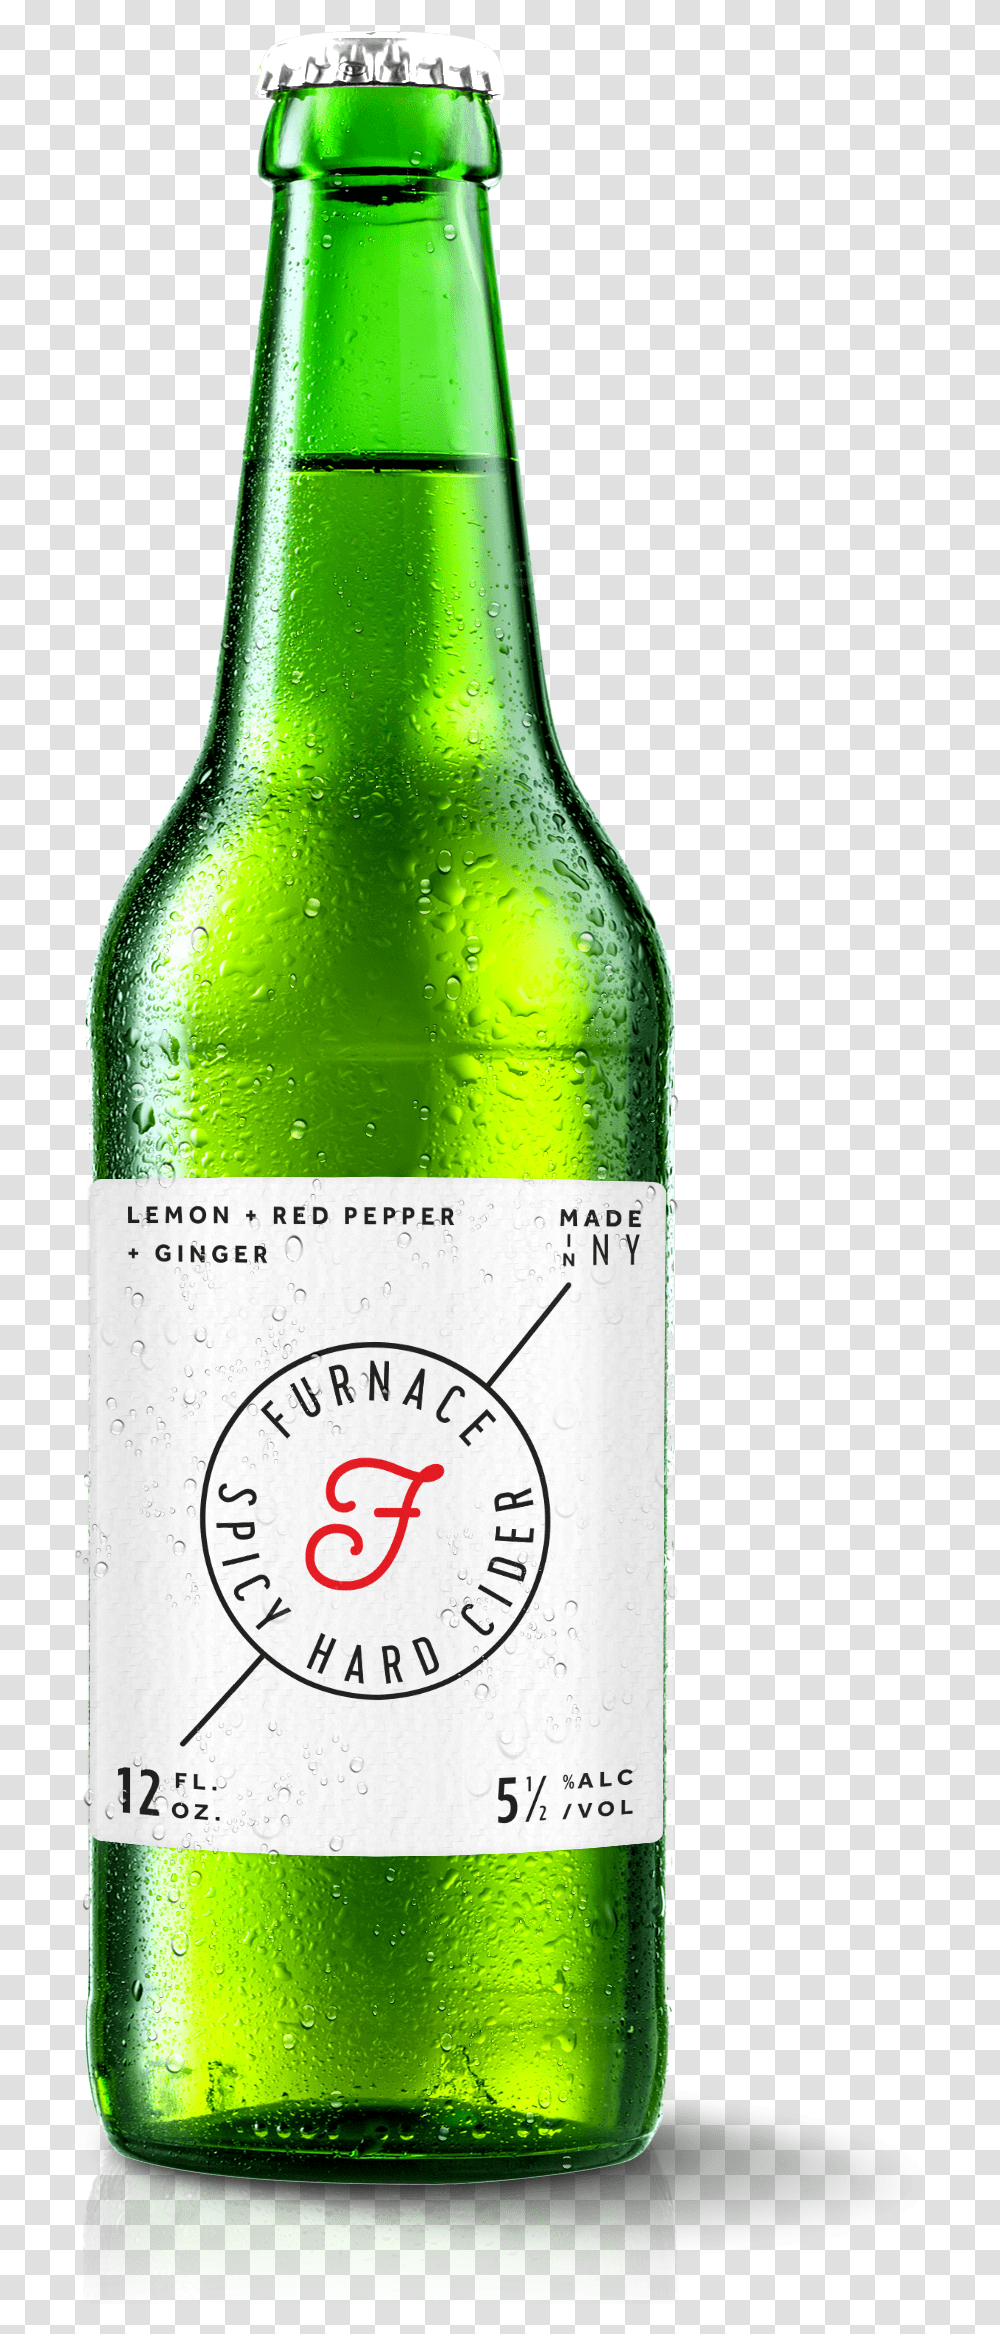 Download A Large Image Of Furnace Cider Bottle And Glass Bottle, Beer, Alcohol, Beverage, Drink Transparent Png